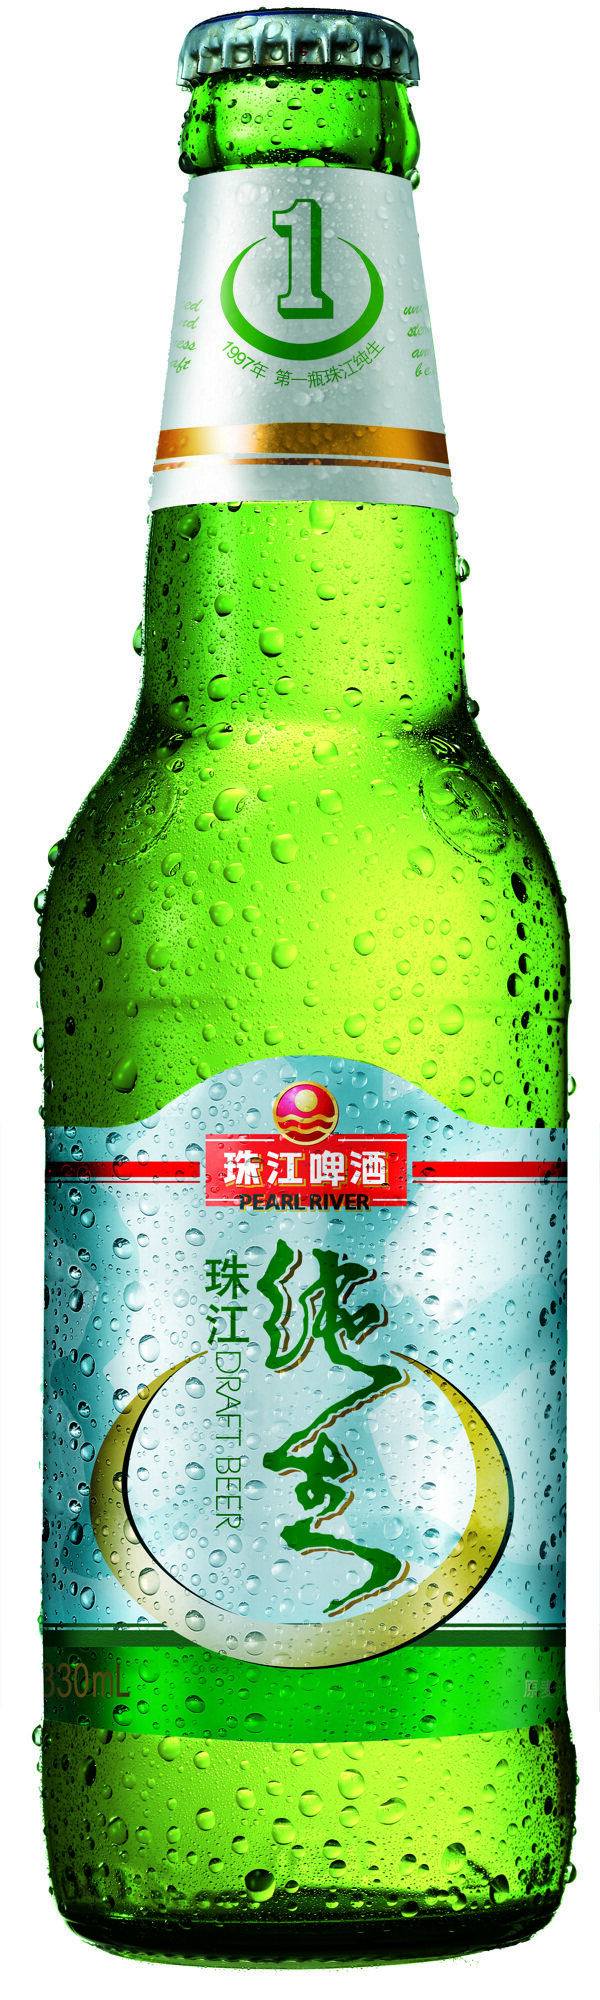 纯生啤酒瓶图片